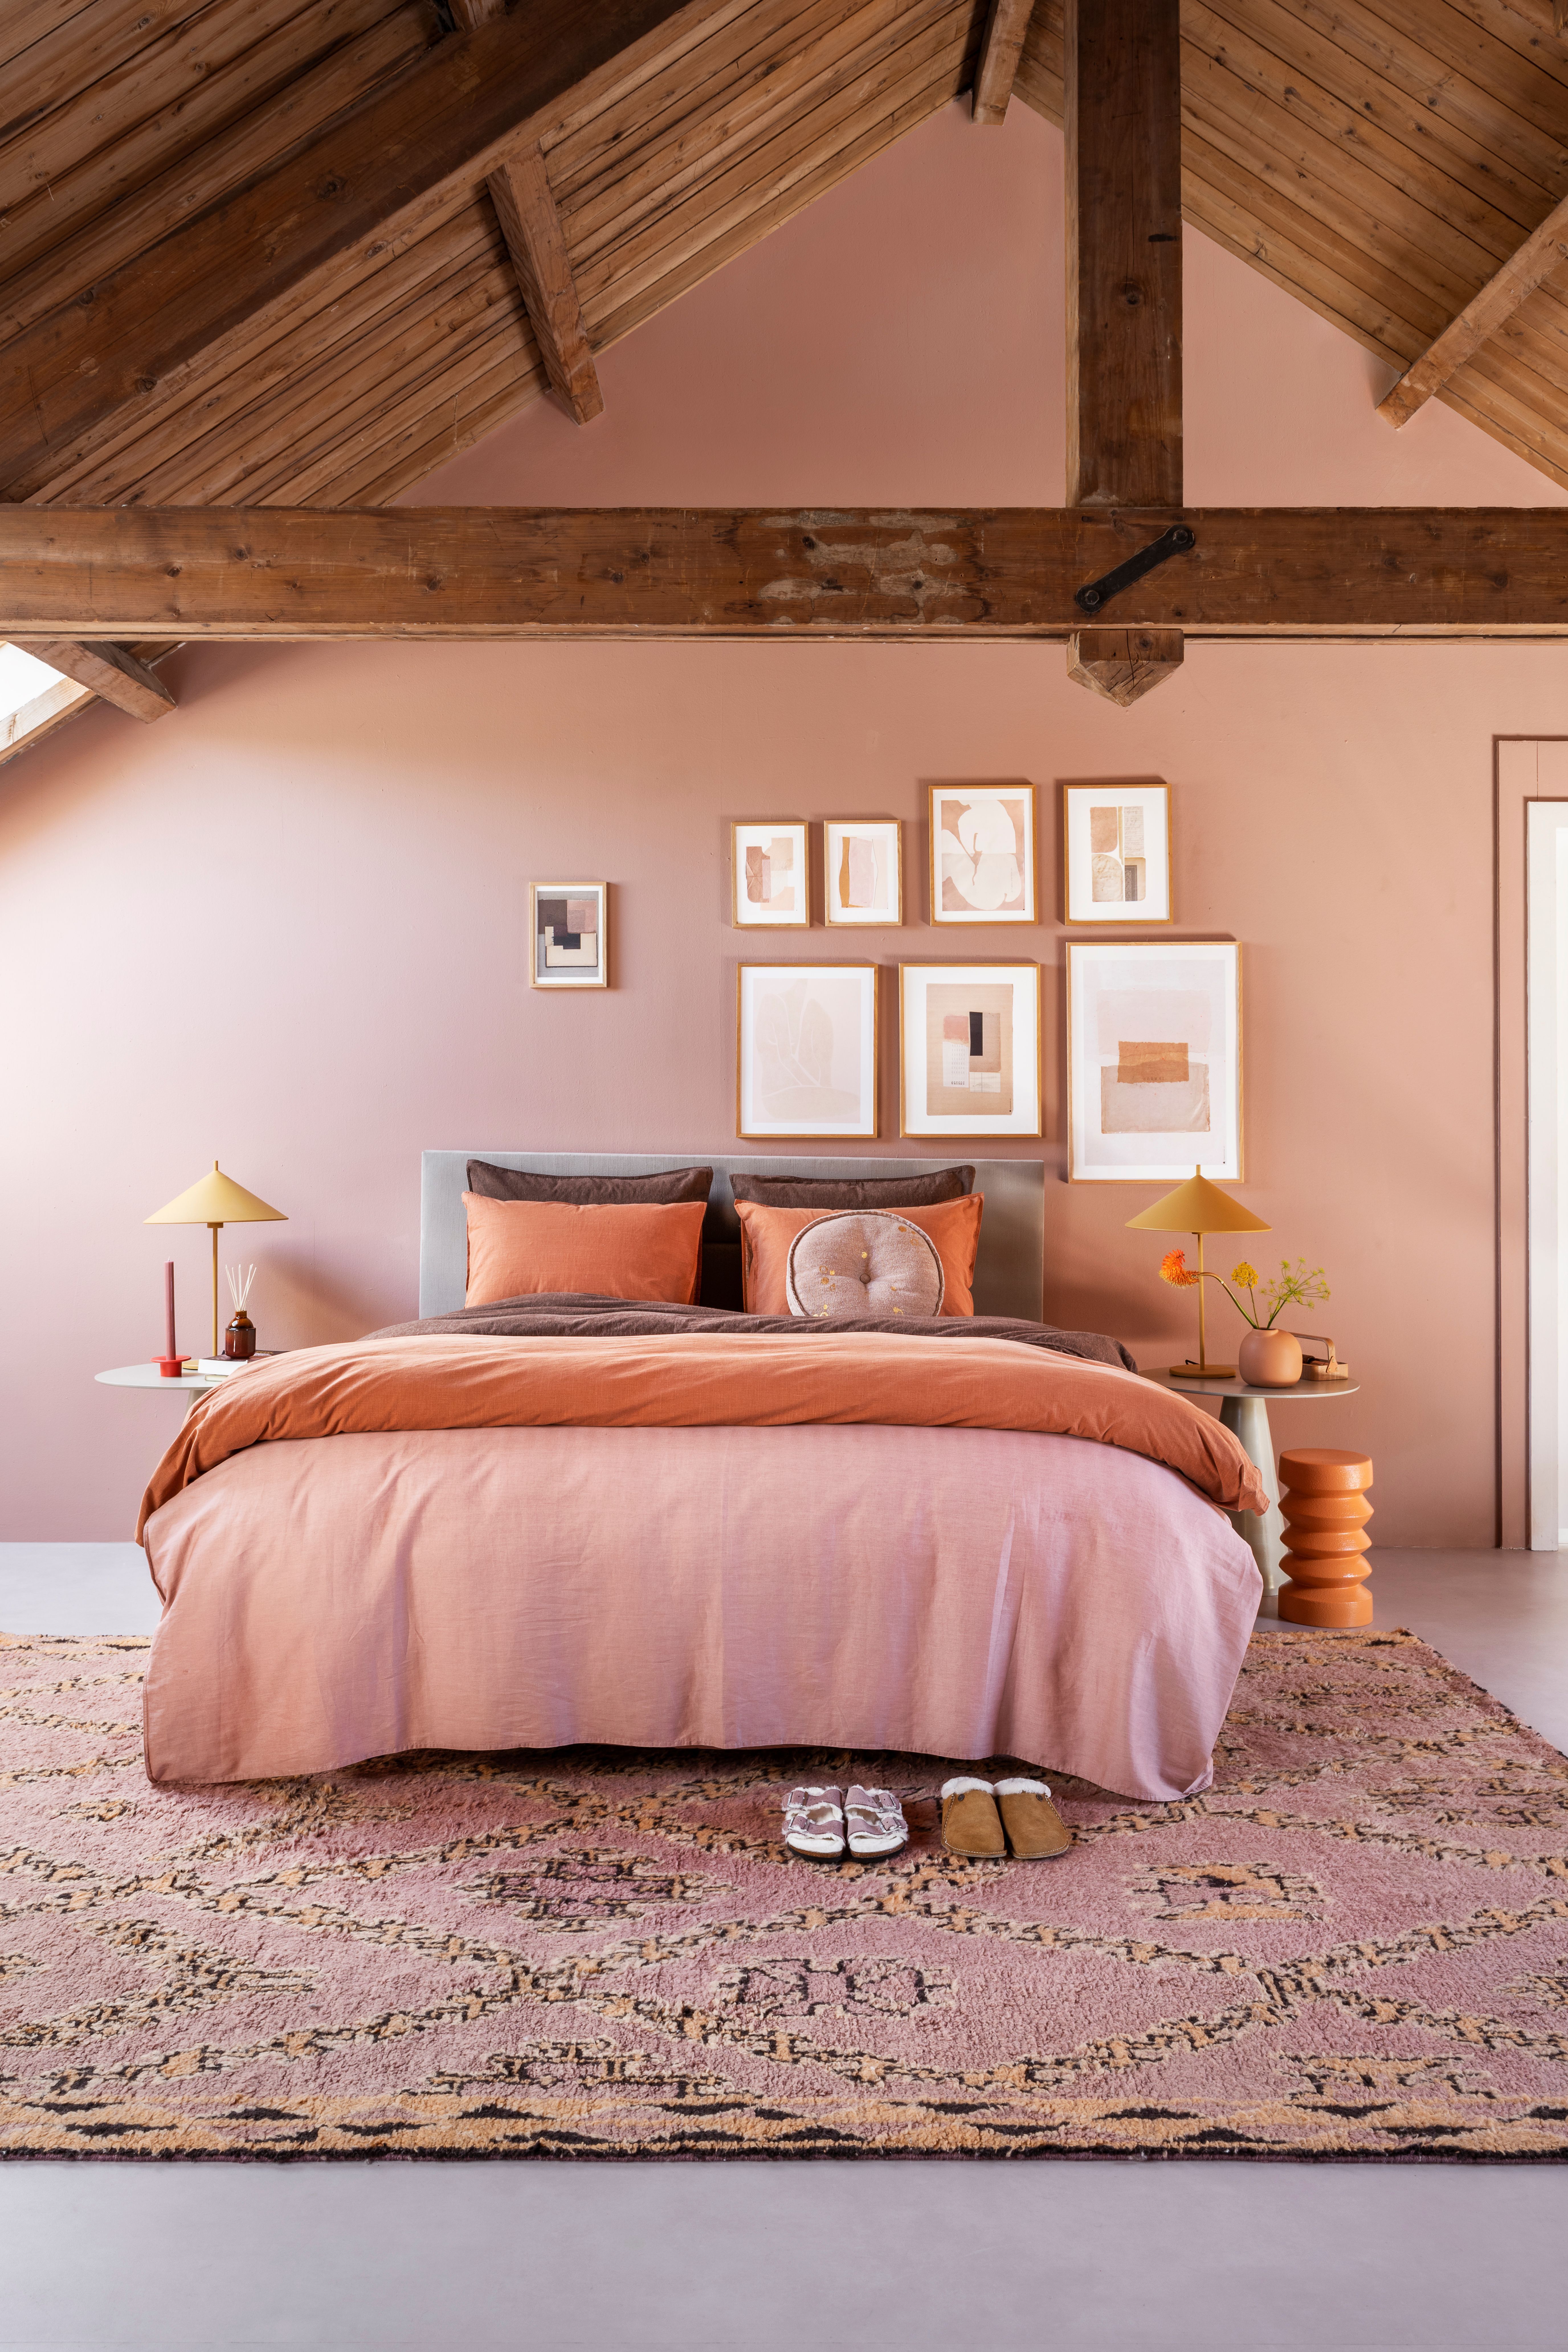 Quarto de casal pintado com rosa chiclete. O teto do quarto é alto, de madeira e forma triangular.